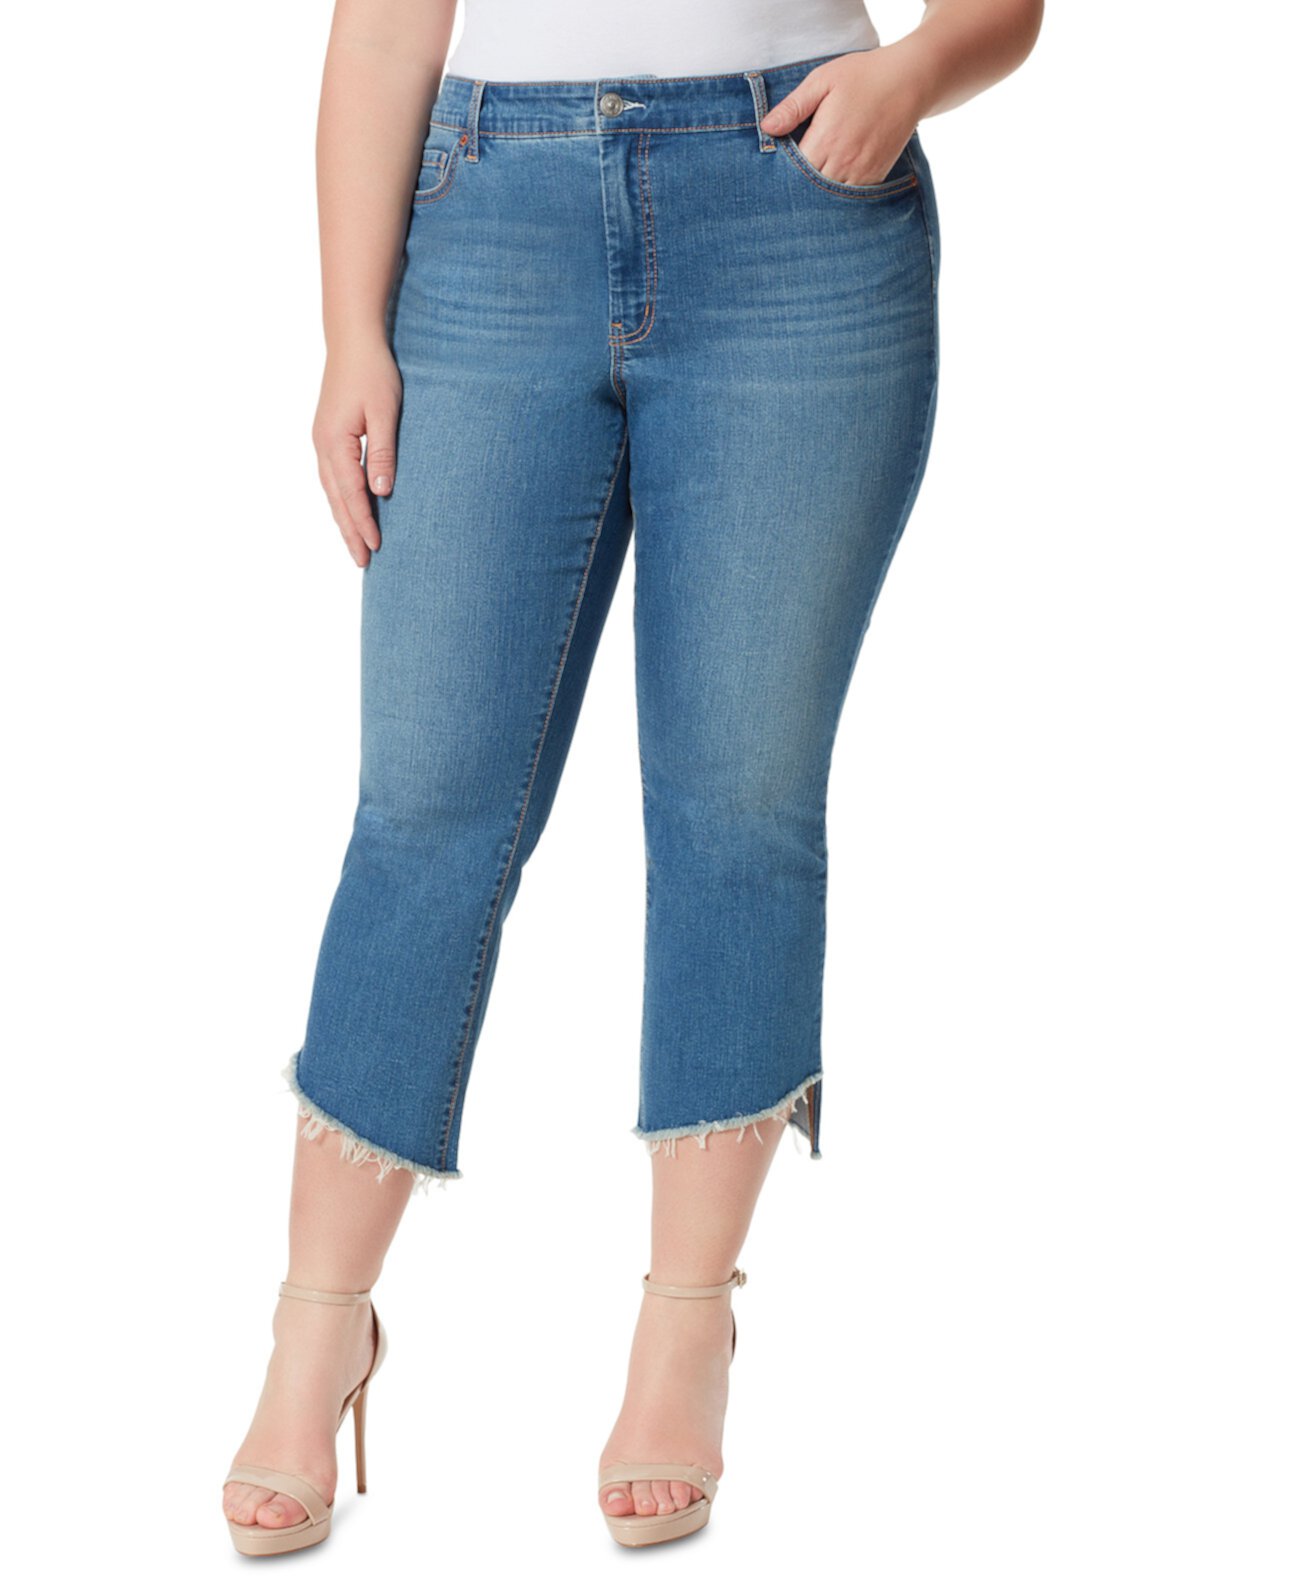 Модные расклешенные джинсы большого размера Adored Jessica Simpson